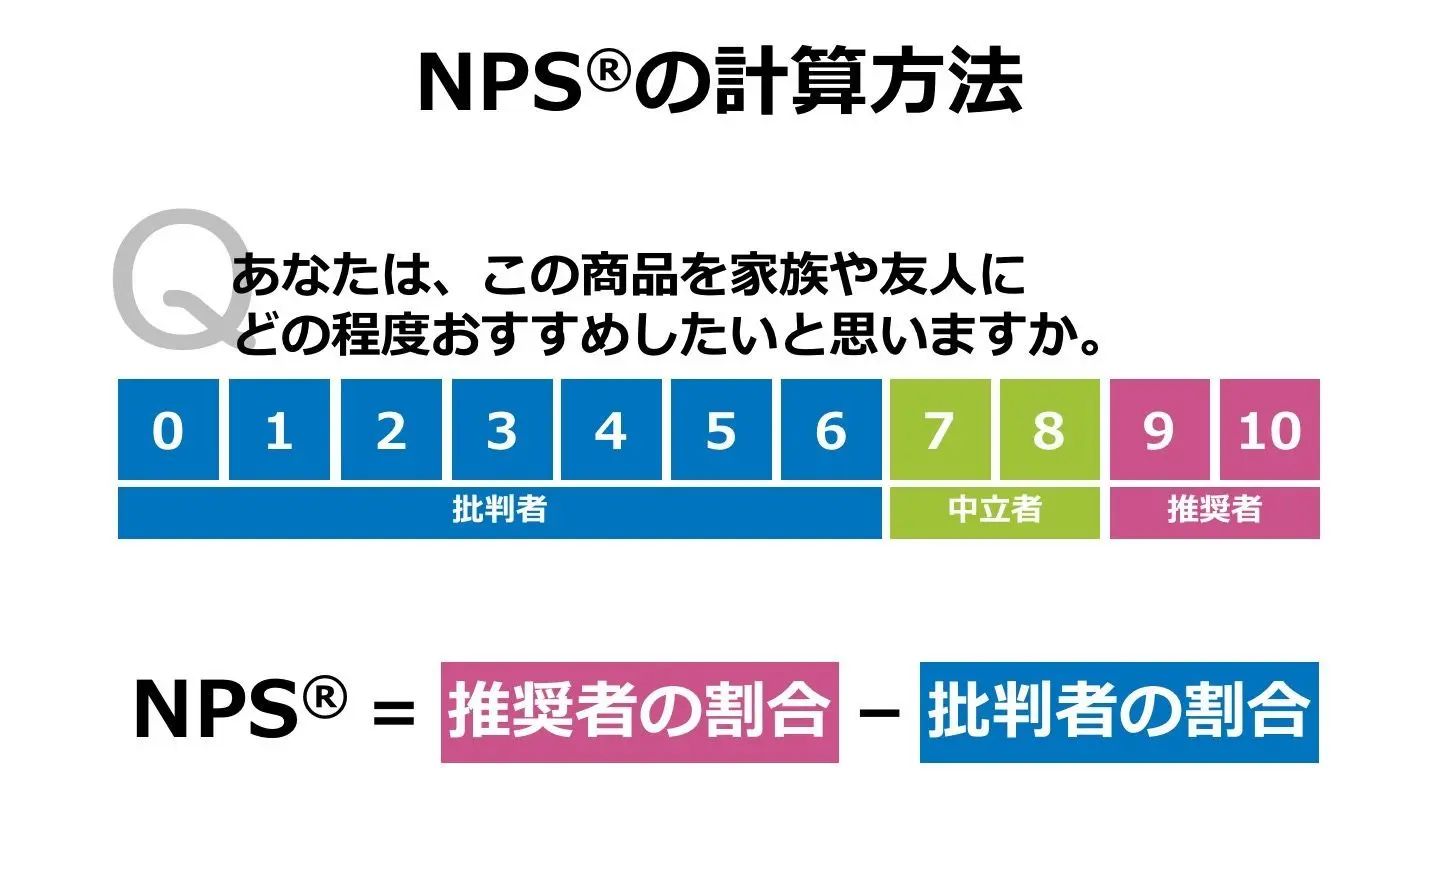 NPS®の計算方法